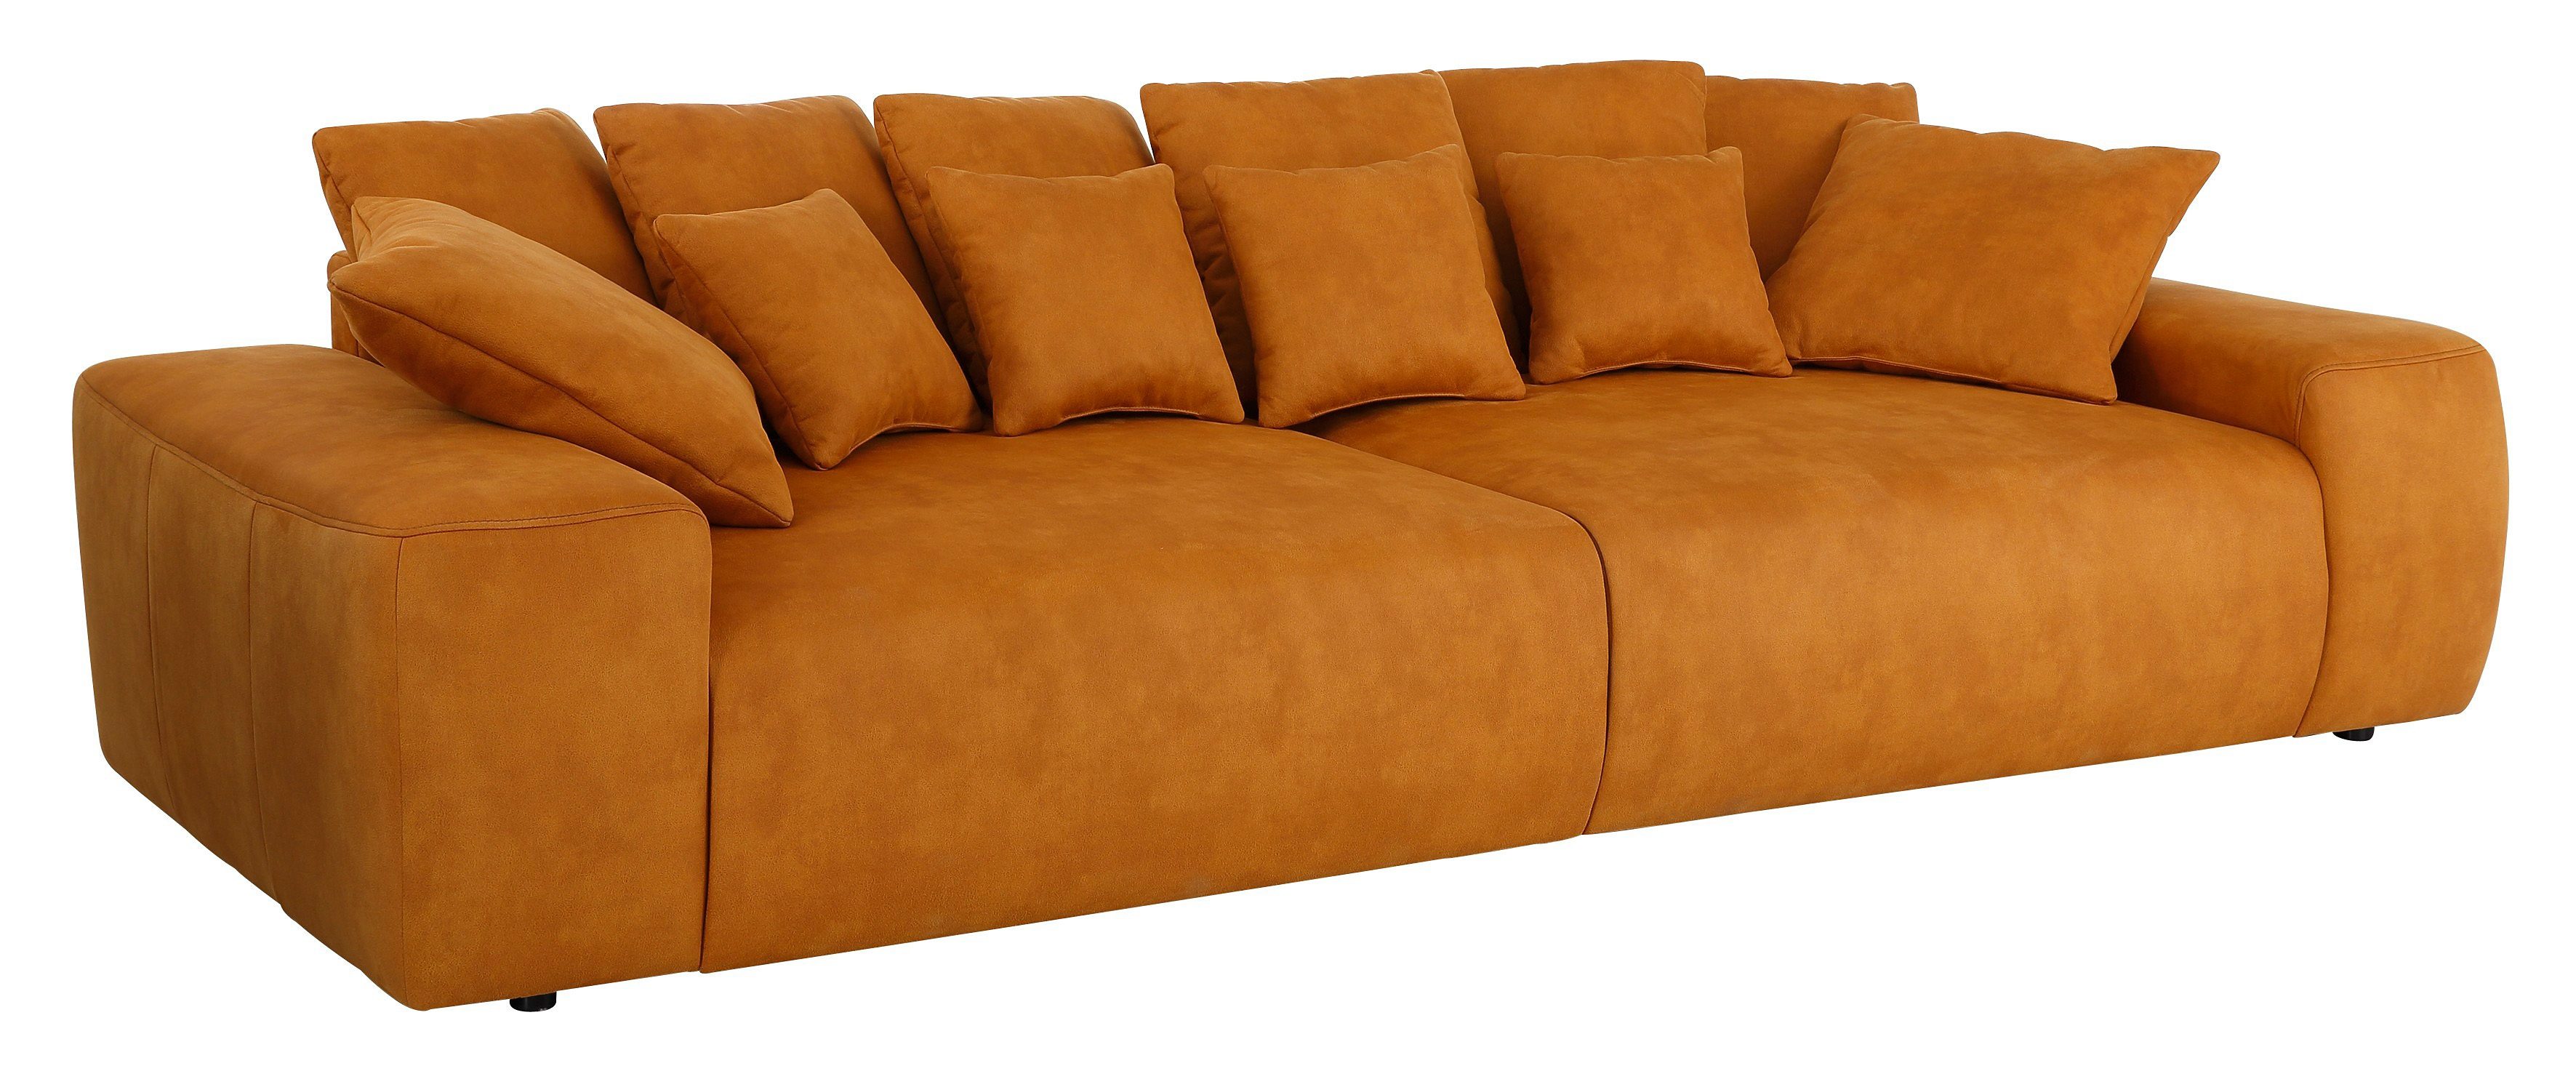 Home affaire Big-Sofa, Breite 302 cm, Lounge Sofa mit vielen losen Kissen-kaufen